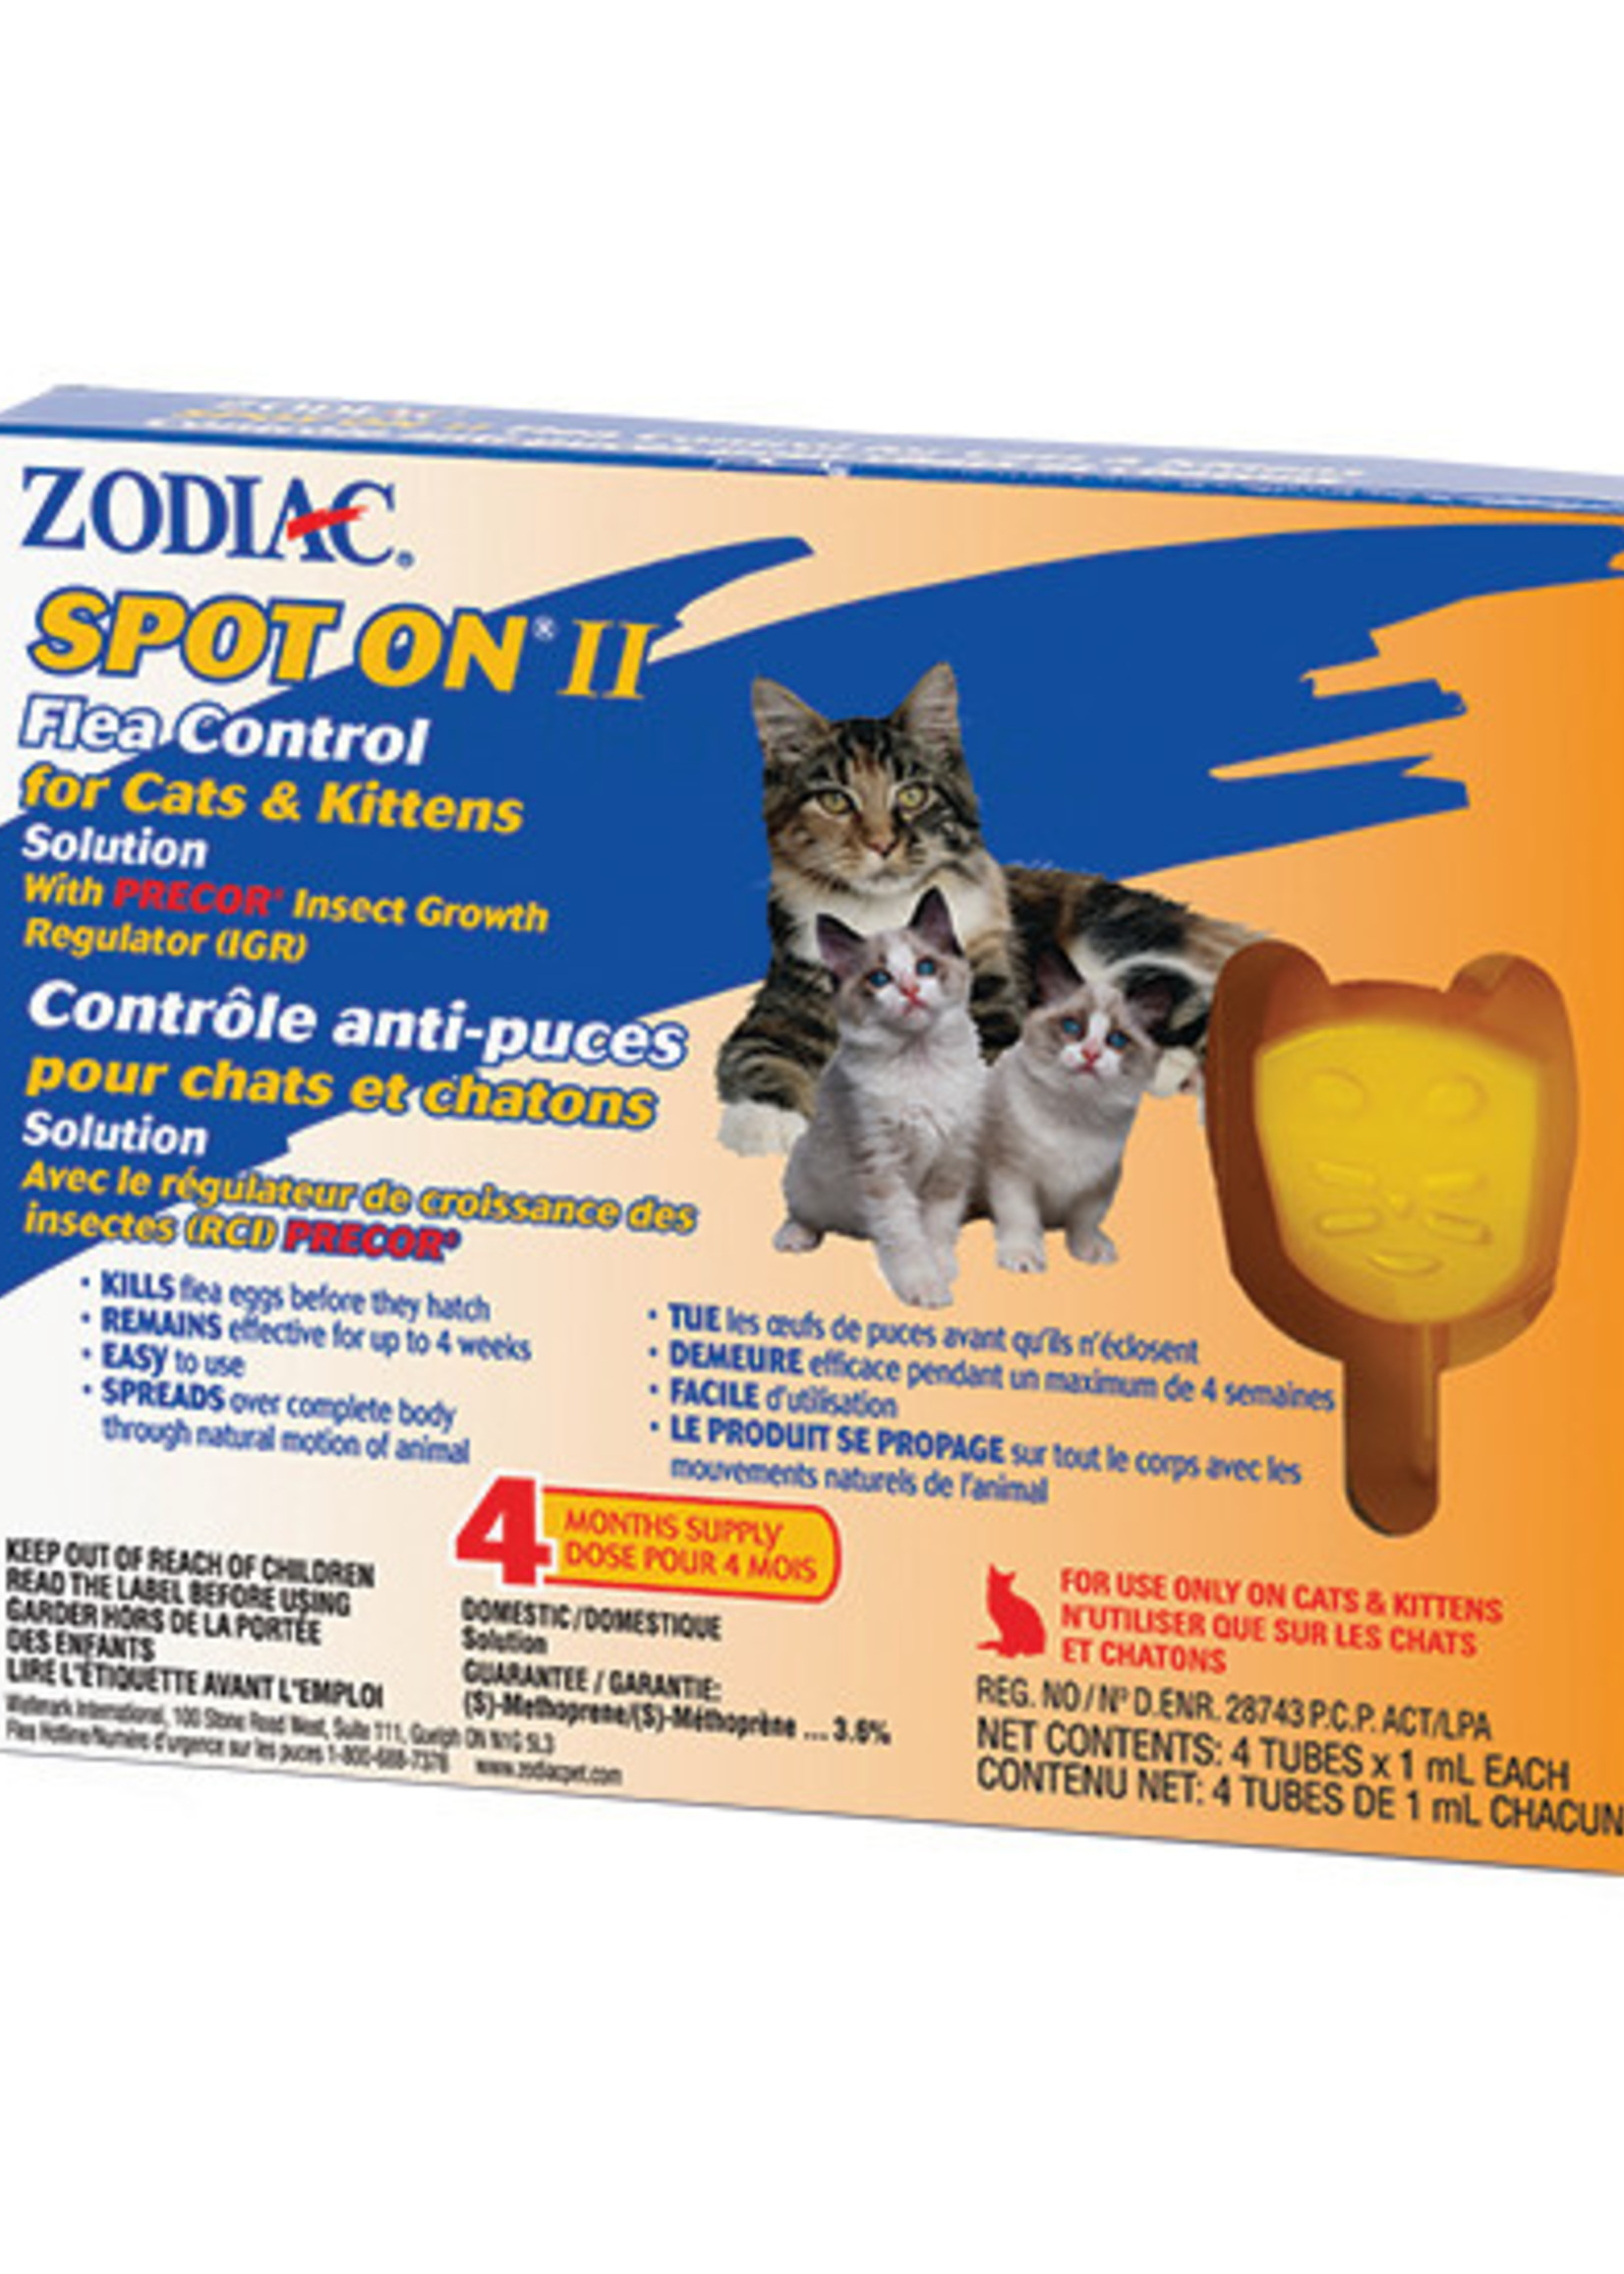 Zodiac® Spot On® II Flea Control for Cats & Kittens